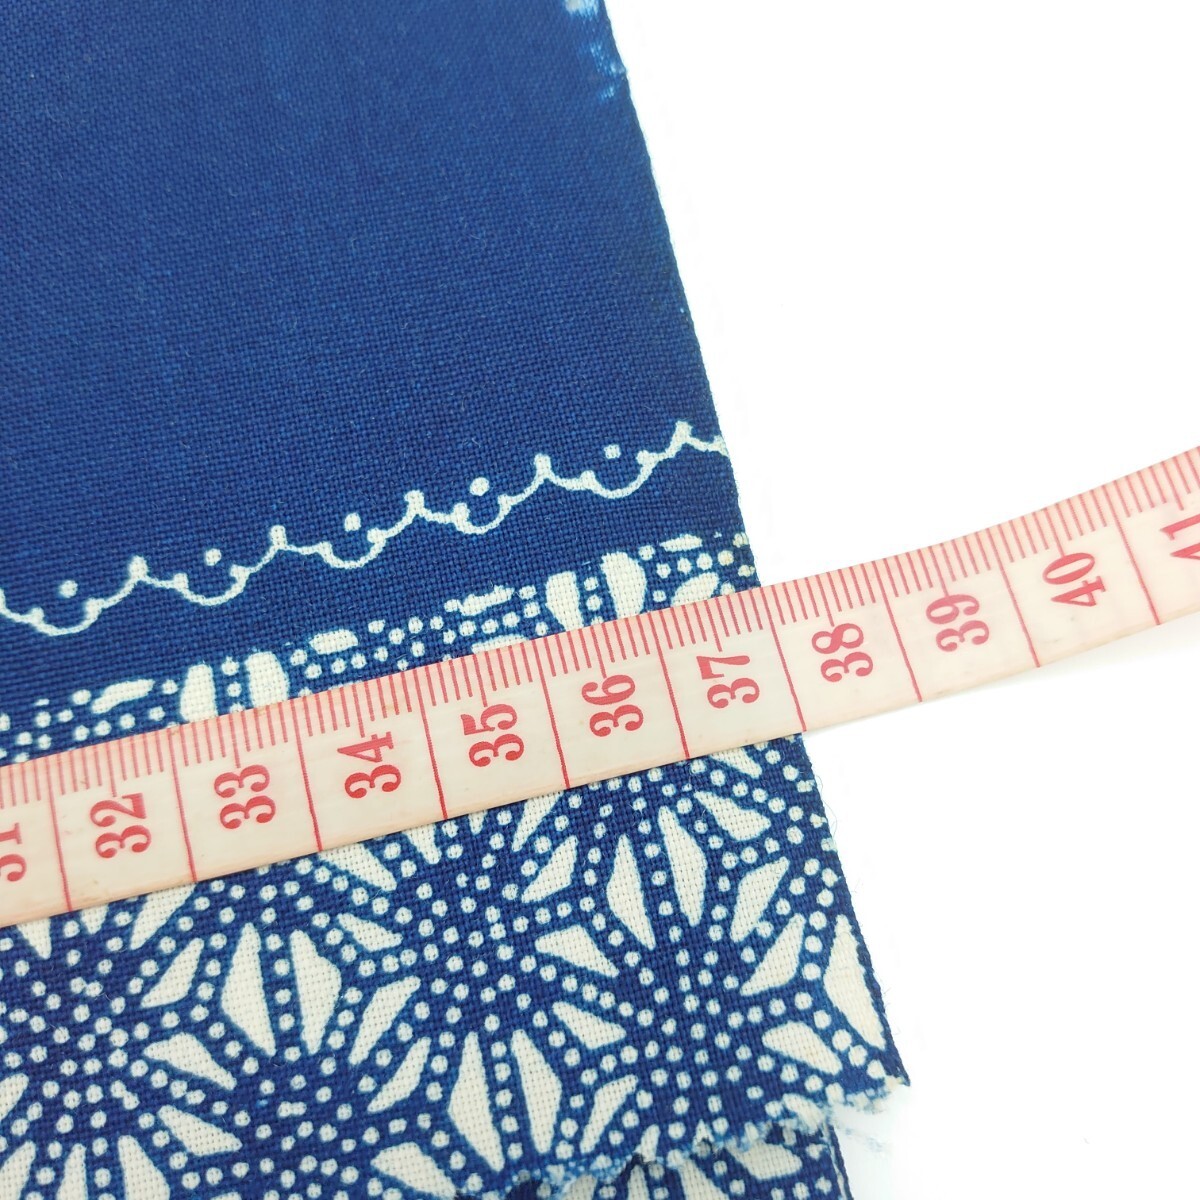 540[ не использовался хранение товар ] специальный отбор ..... Takumi мелкий рисунок упрощенный товар лен. лист узор ткань один .×37cm Япония античный кимоно европейская одежда юката переделка ткань ткань 